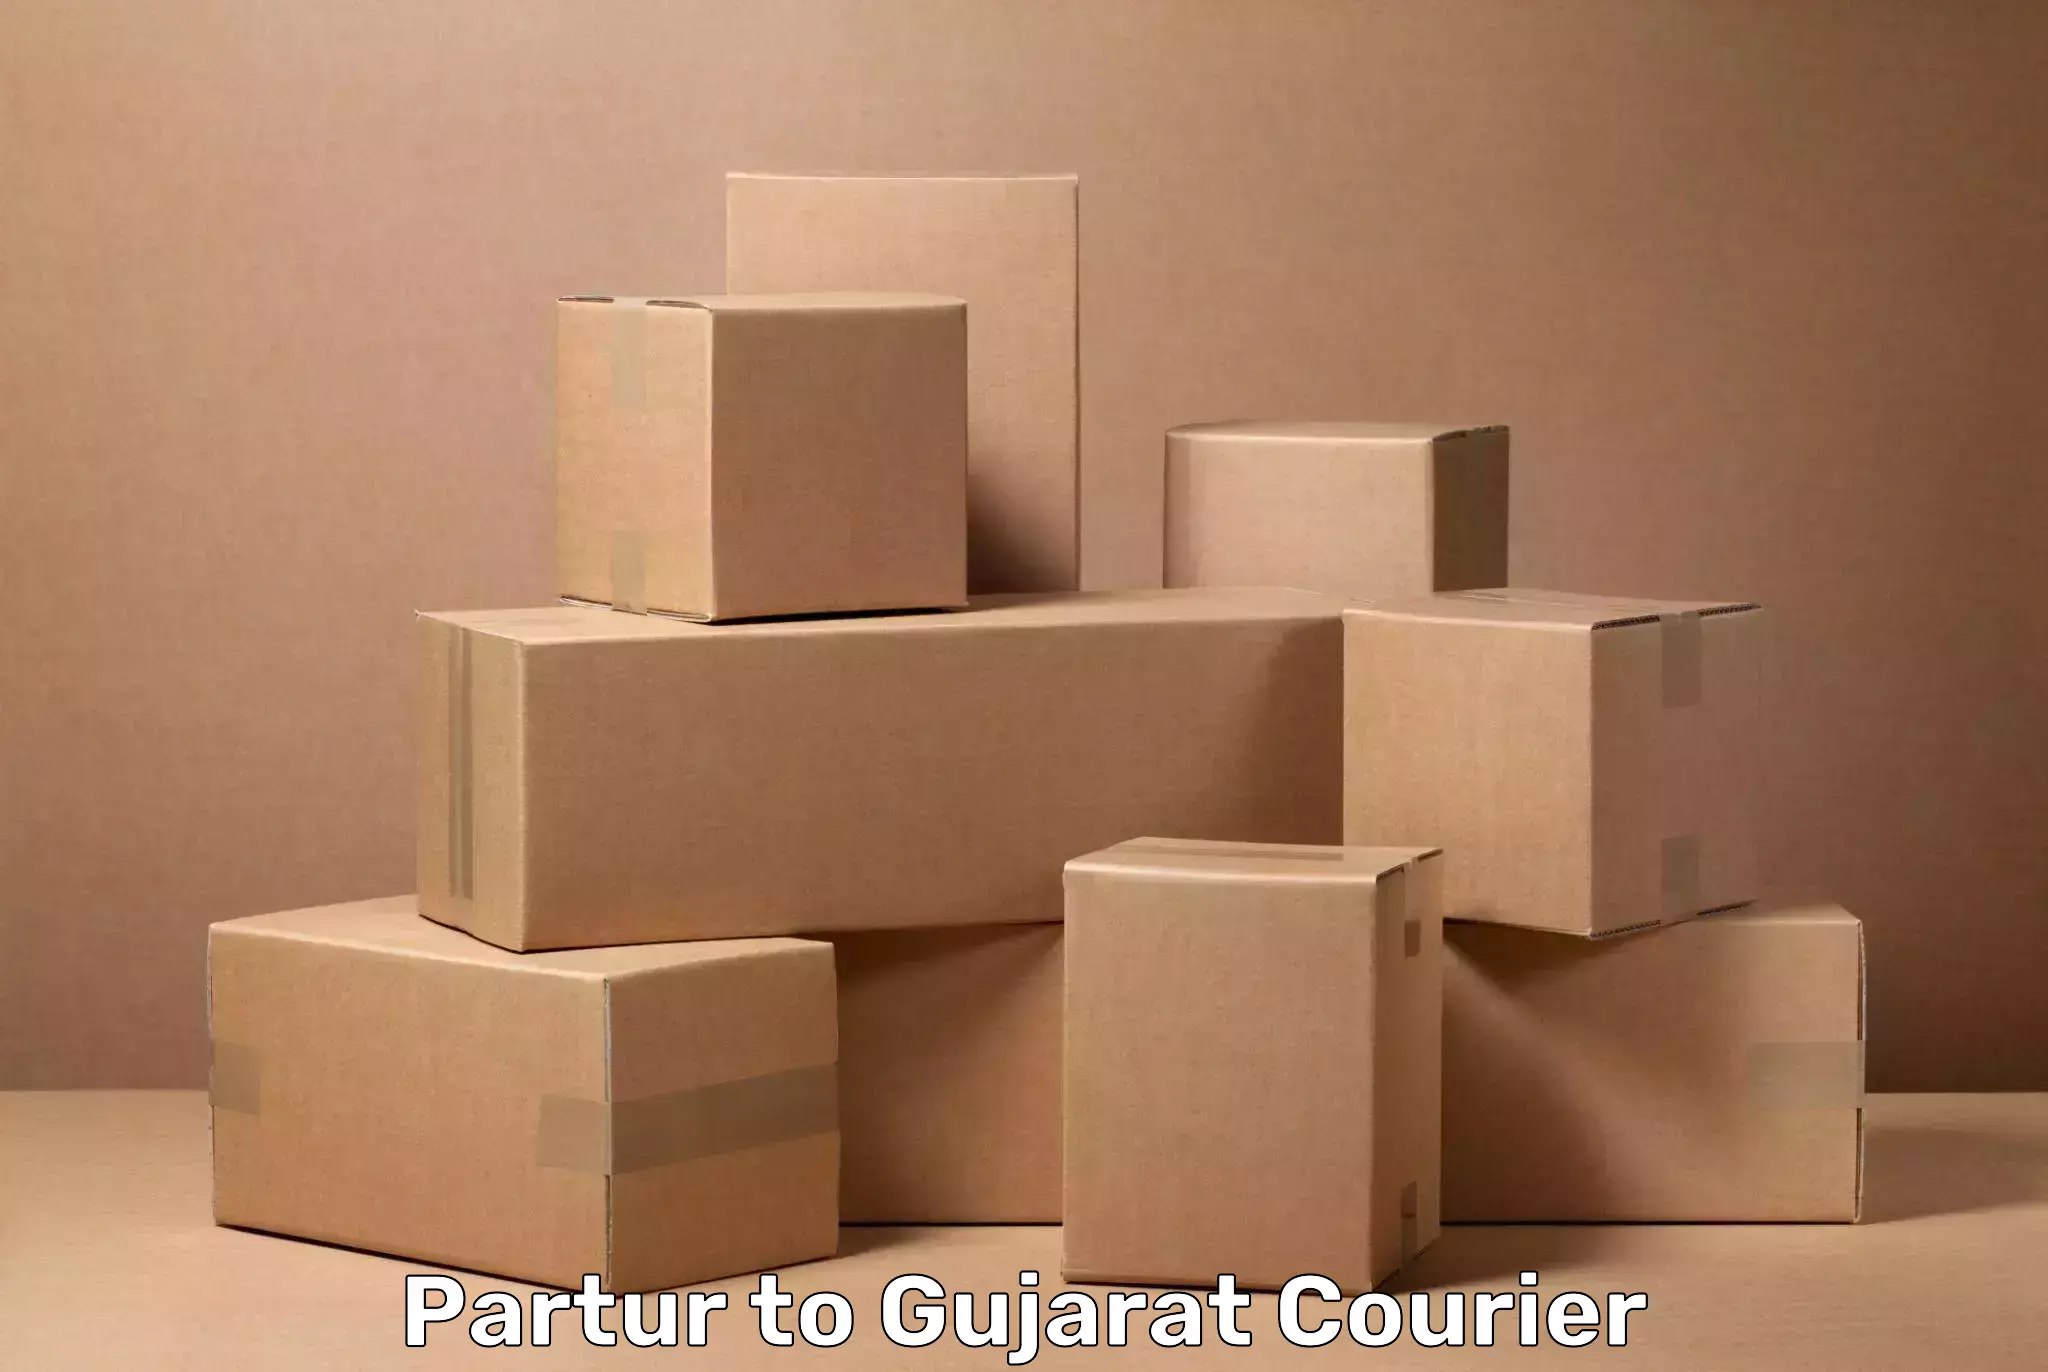 Digital baggage courier Partur to Gujarat